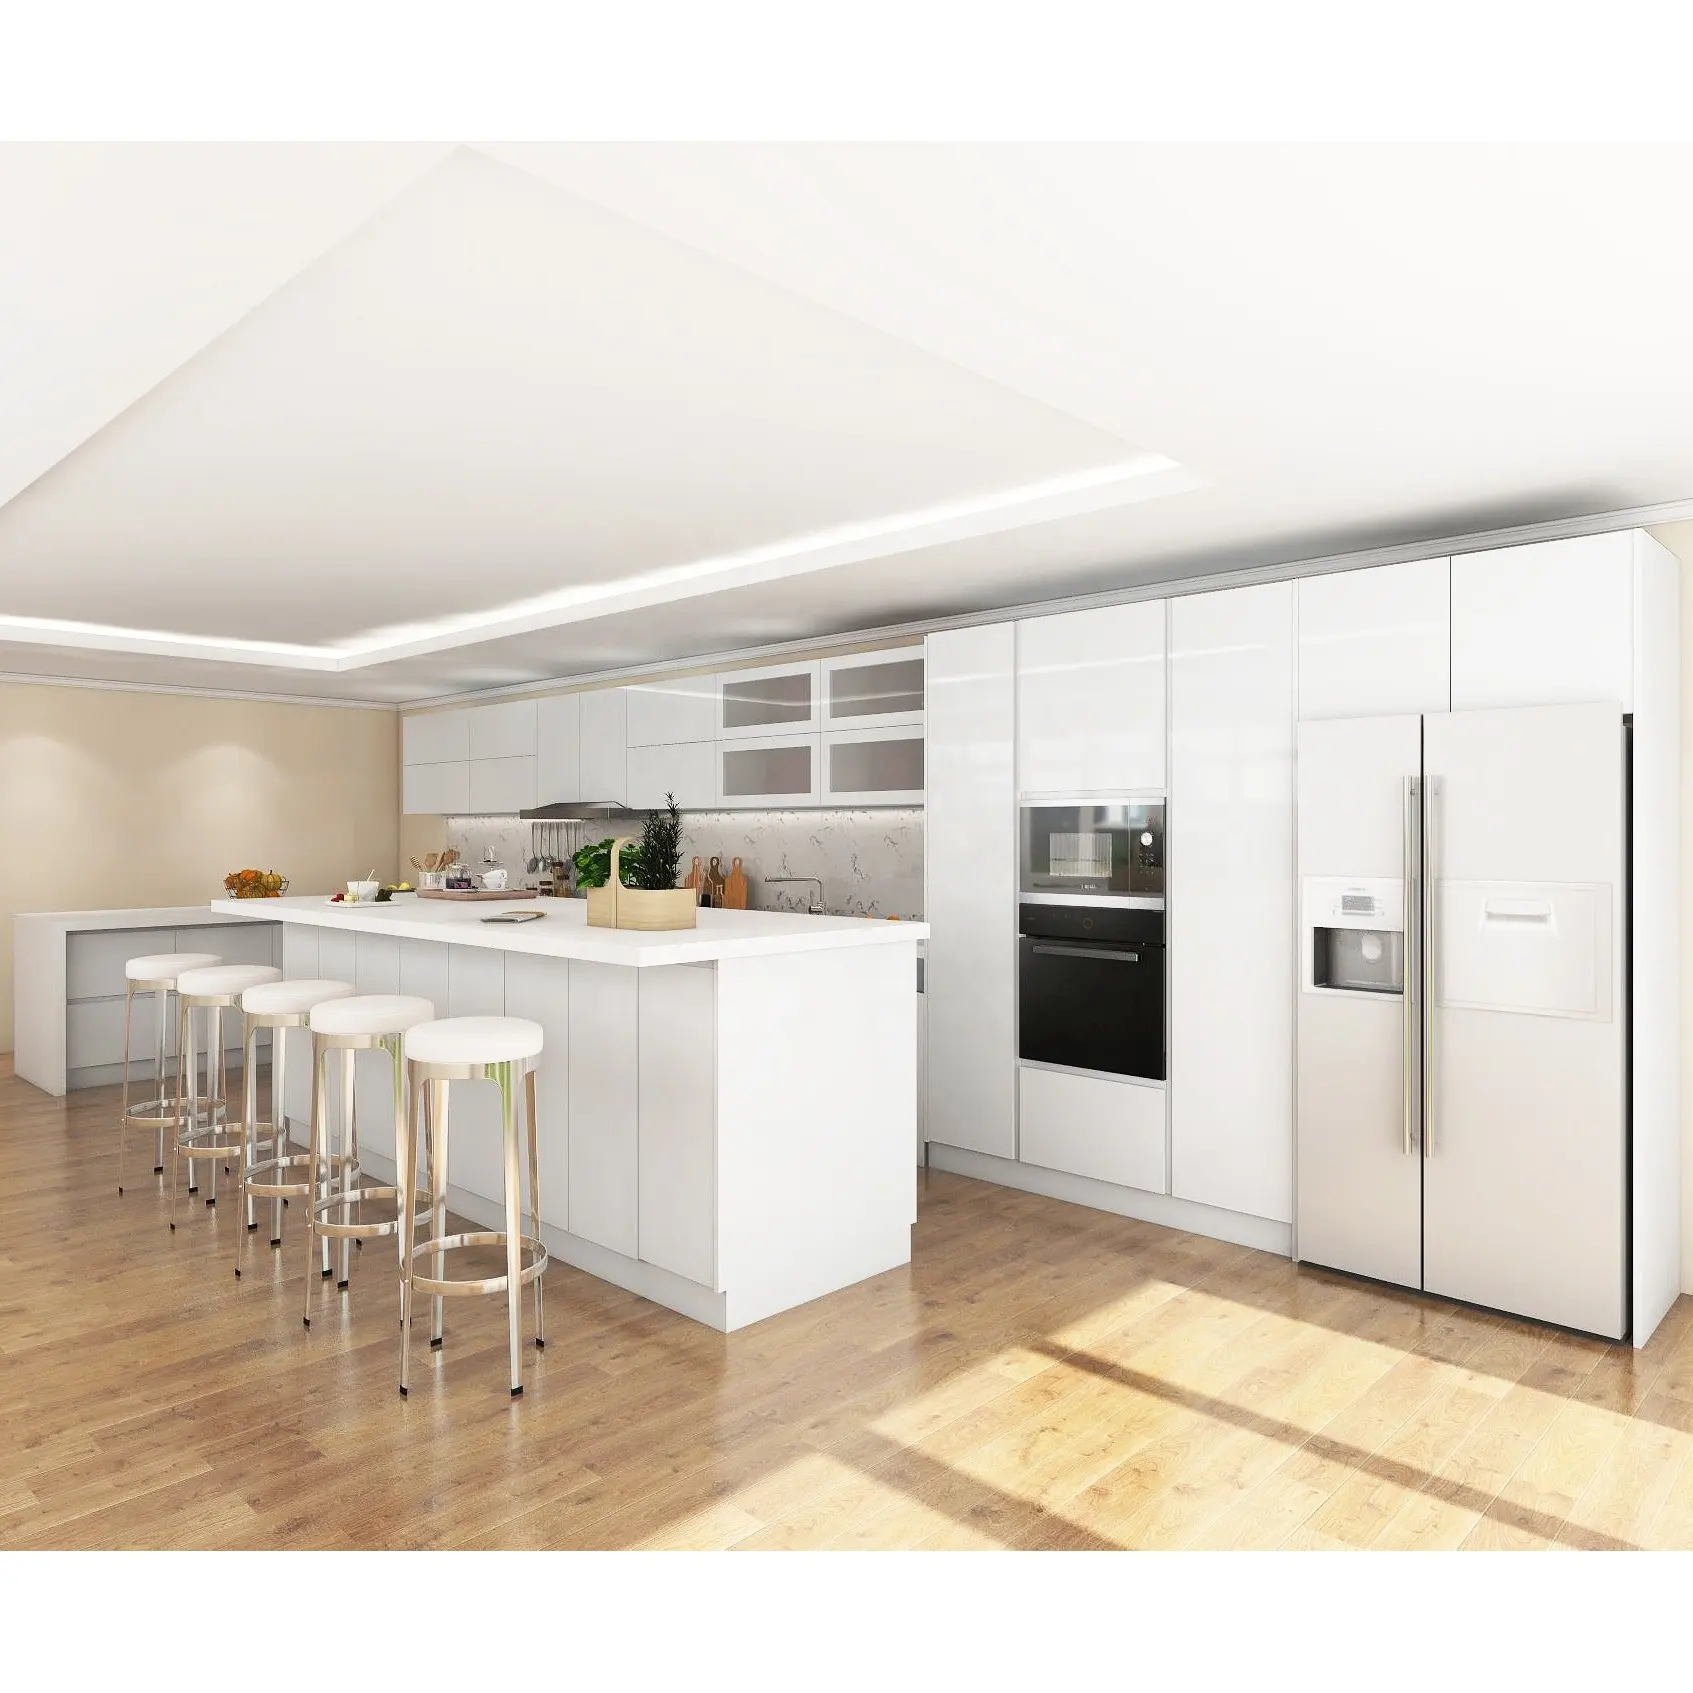 Nuevo diseño de pintura laca horizontal para el hogar, armario de cocina moderno, color blanco, hpl